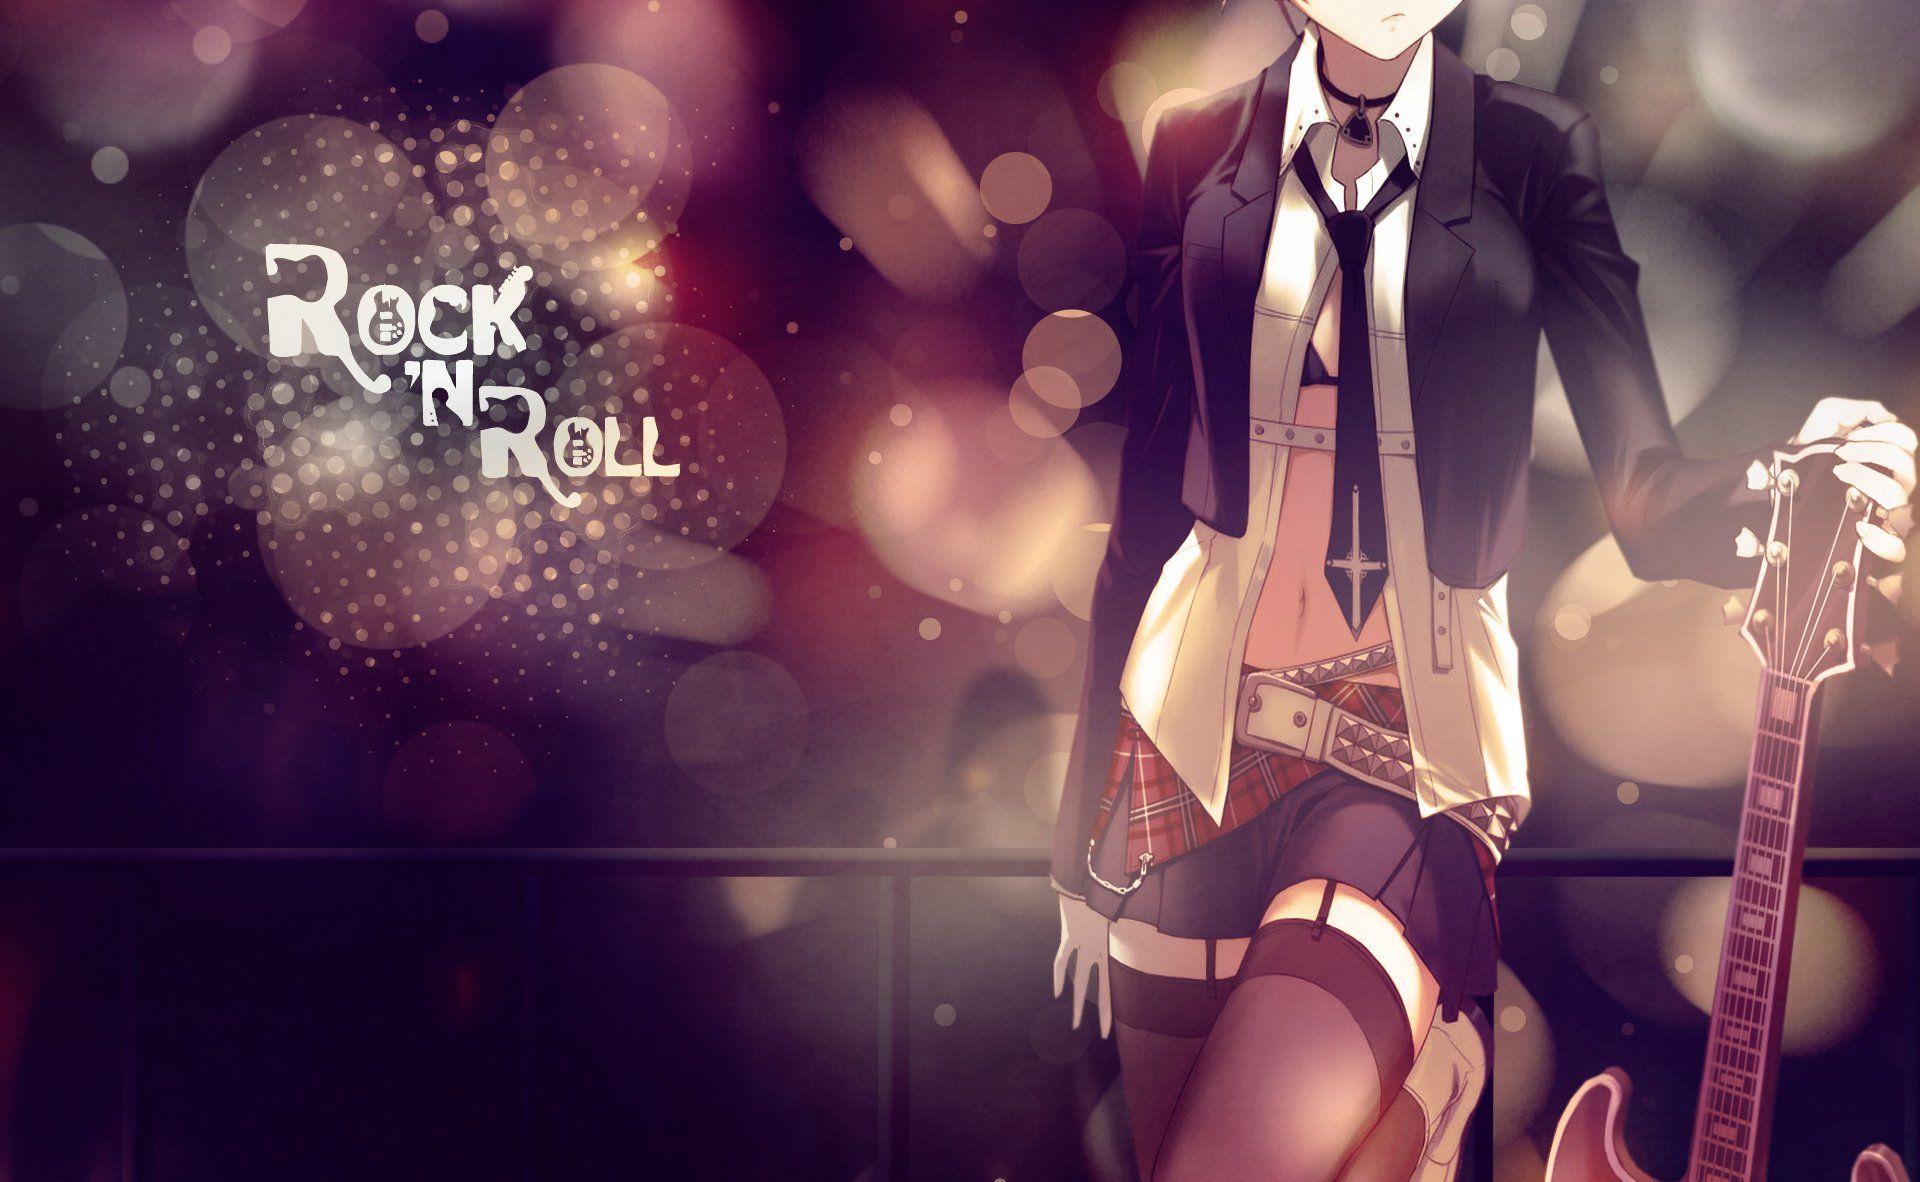 Wallpaper.wiki Anime Rock Roll Girl Guitar Bokeh Light Music